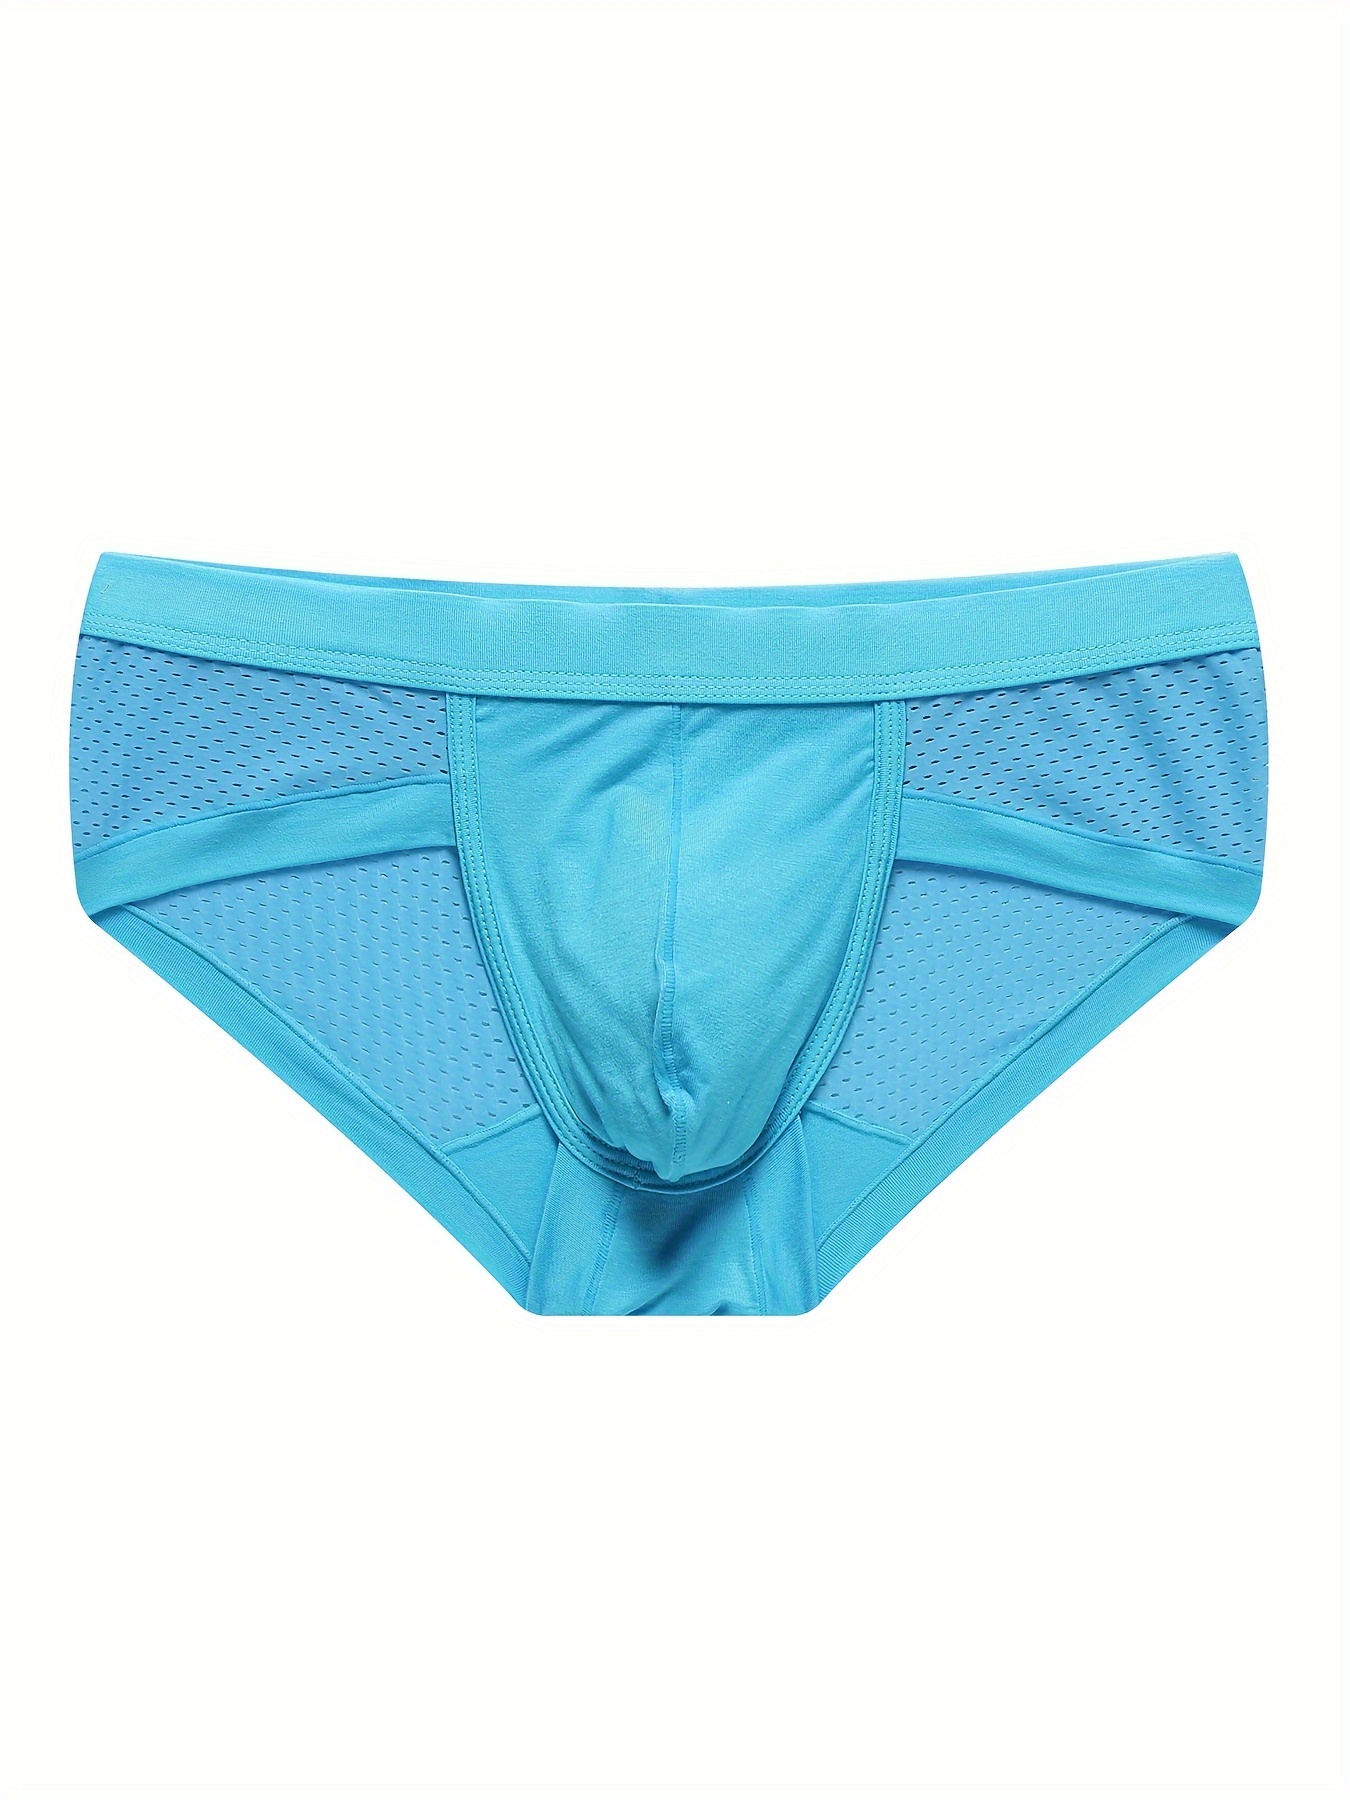 Men's Mesh Briefs Stretchy Low Waist Underwear 1 PC Sexy Briefs